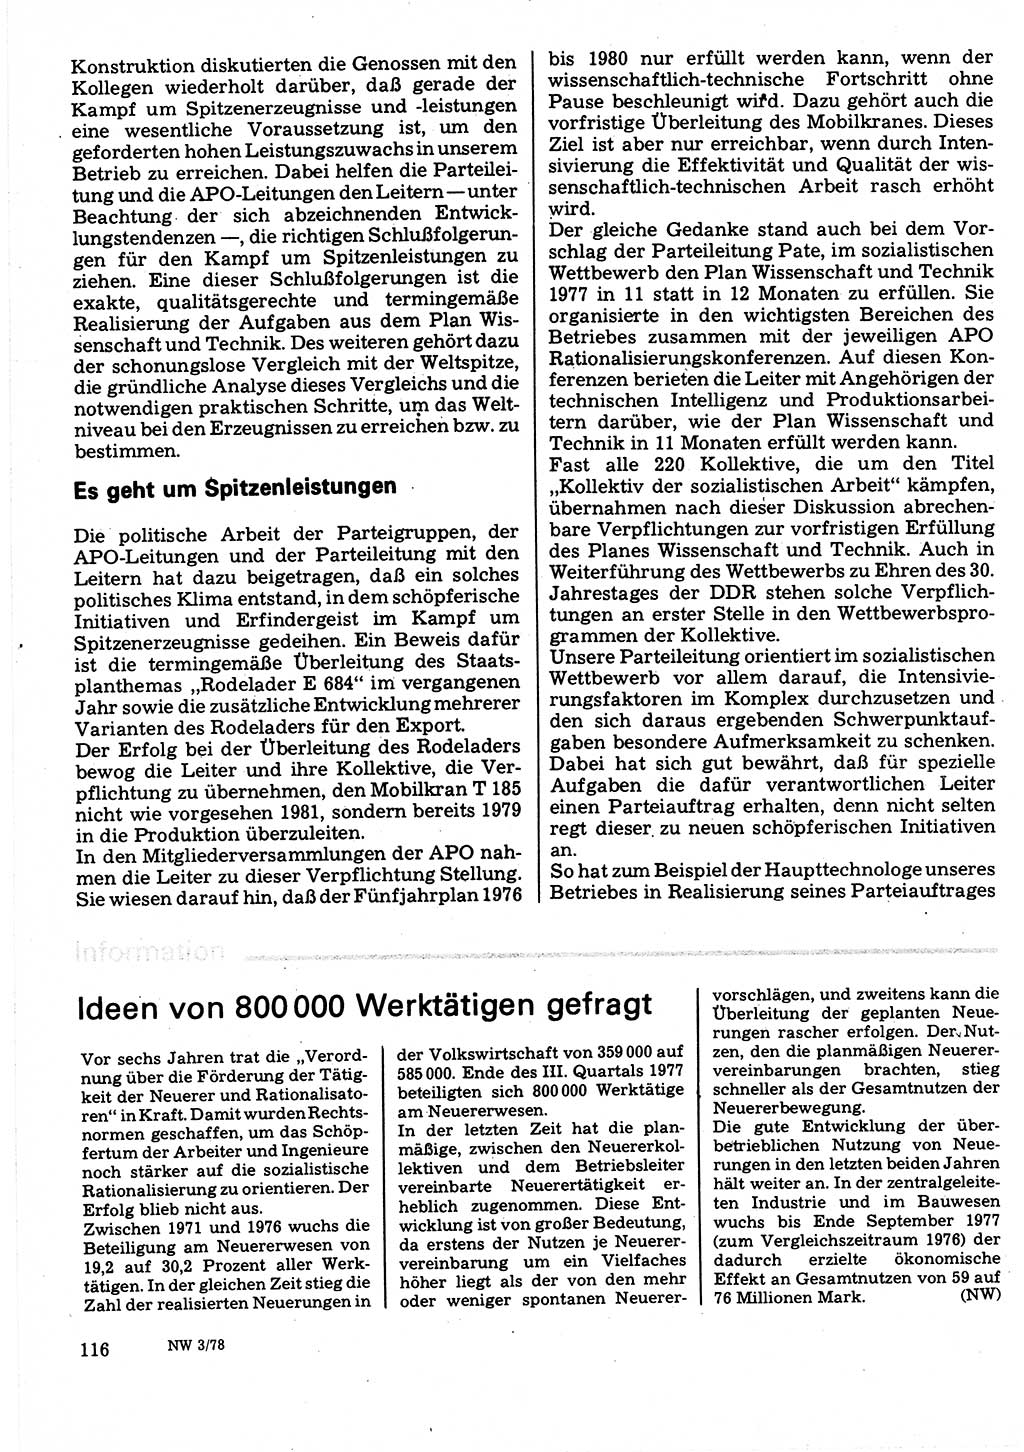 Neuer Weg (NW), Organ des Zentralkomitees (ZK) der SED (Sozialistische Einheitspartei Deutschlands) für Fragen des Parteilebens, 33. Jahrgang [Deutsche Demokratische Republik (DDR)] 1978, Seite 116 (NW ZK SED DDR 1978, S. 116)